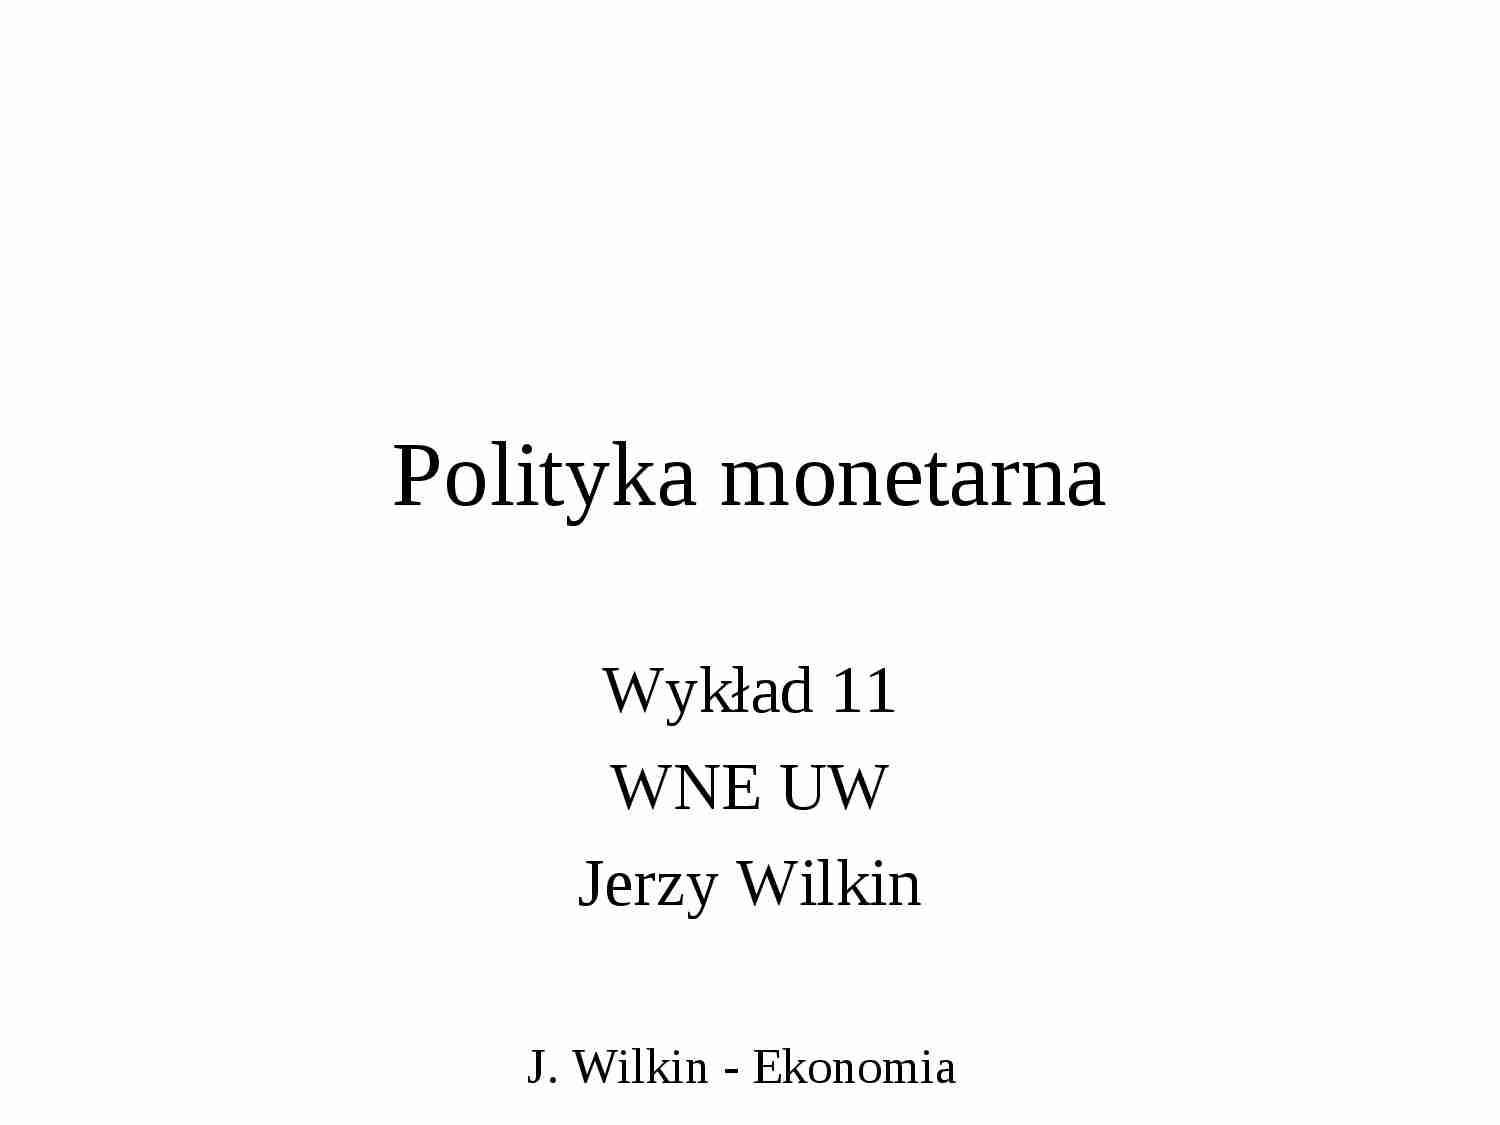 Polityka monetarna - wykład - strona 1